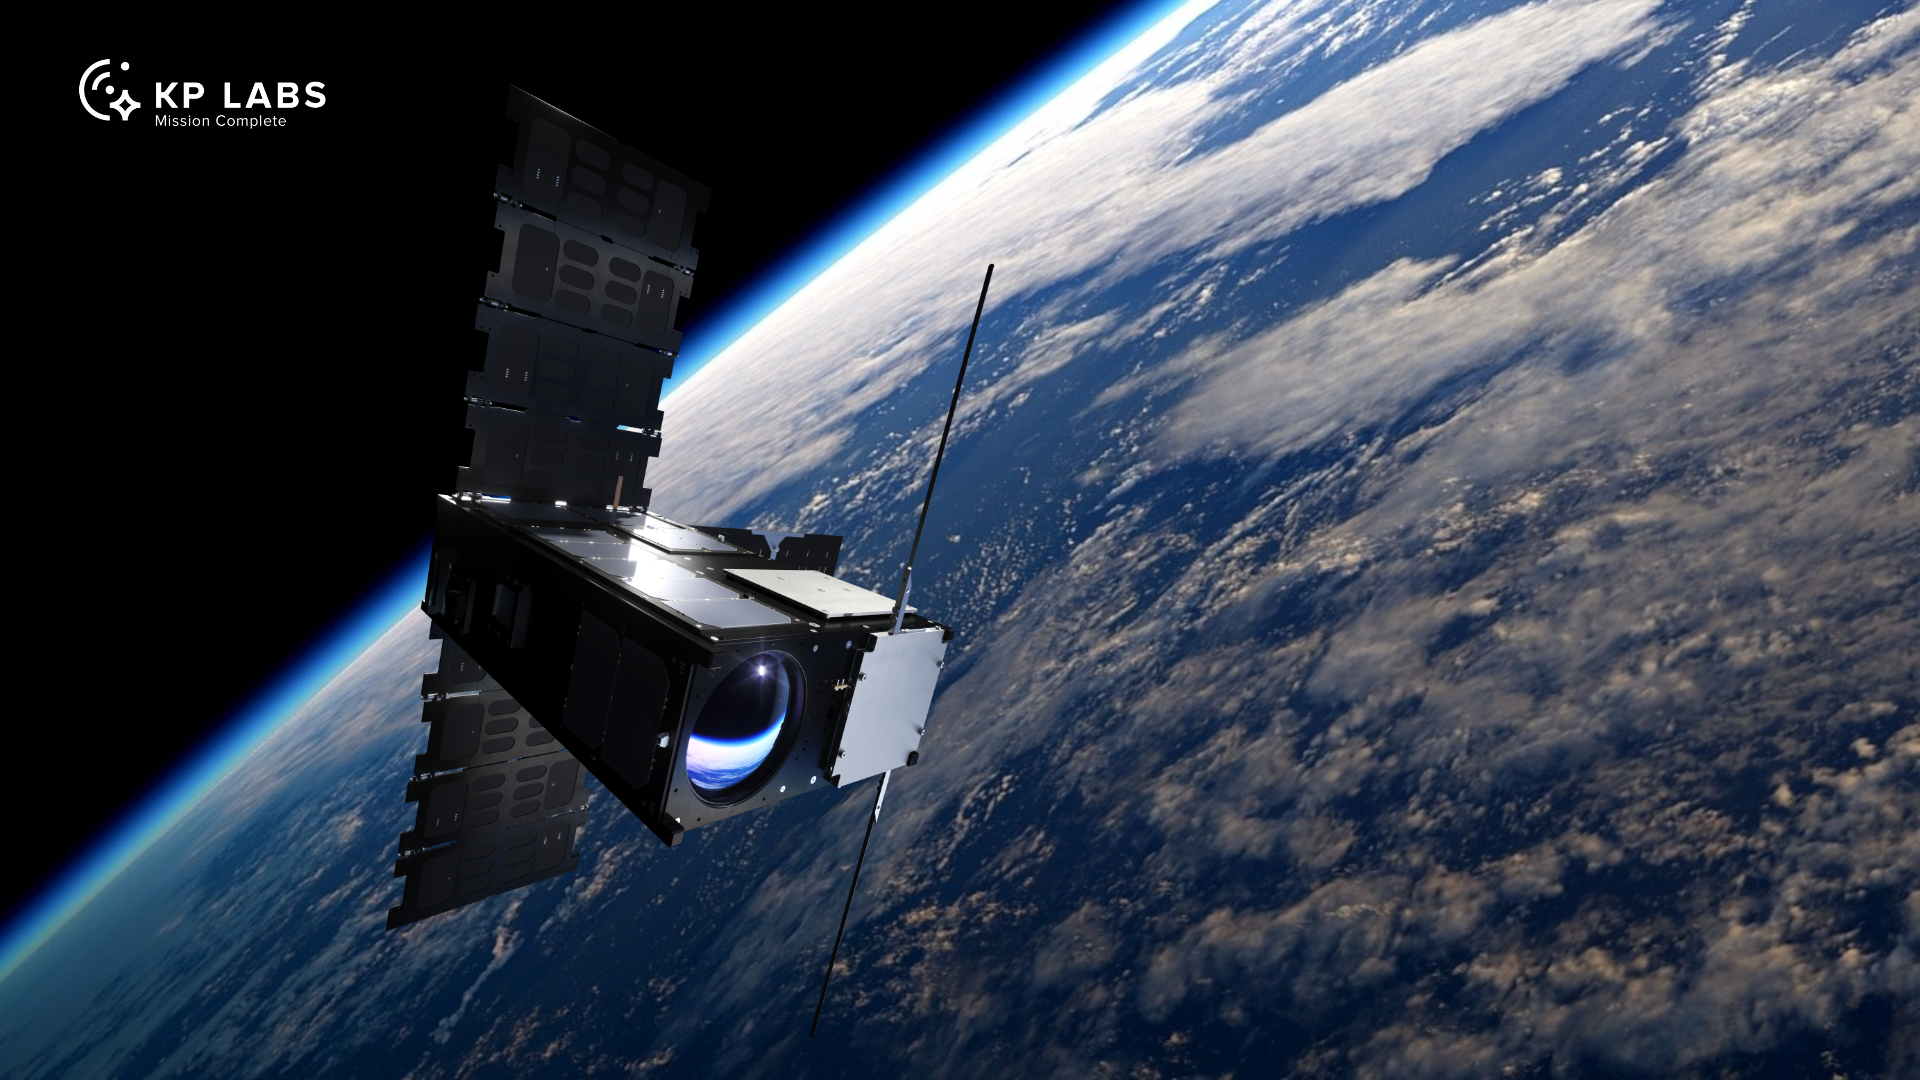 #NowoczesnyPrzemysłGliwic: KP Labs. Ich satelita i komputer już wkrótce na orbicie! 